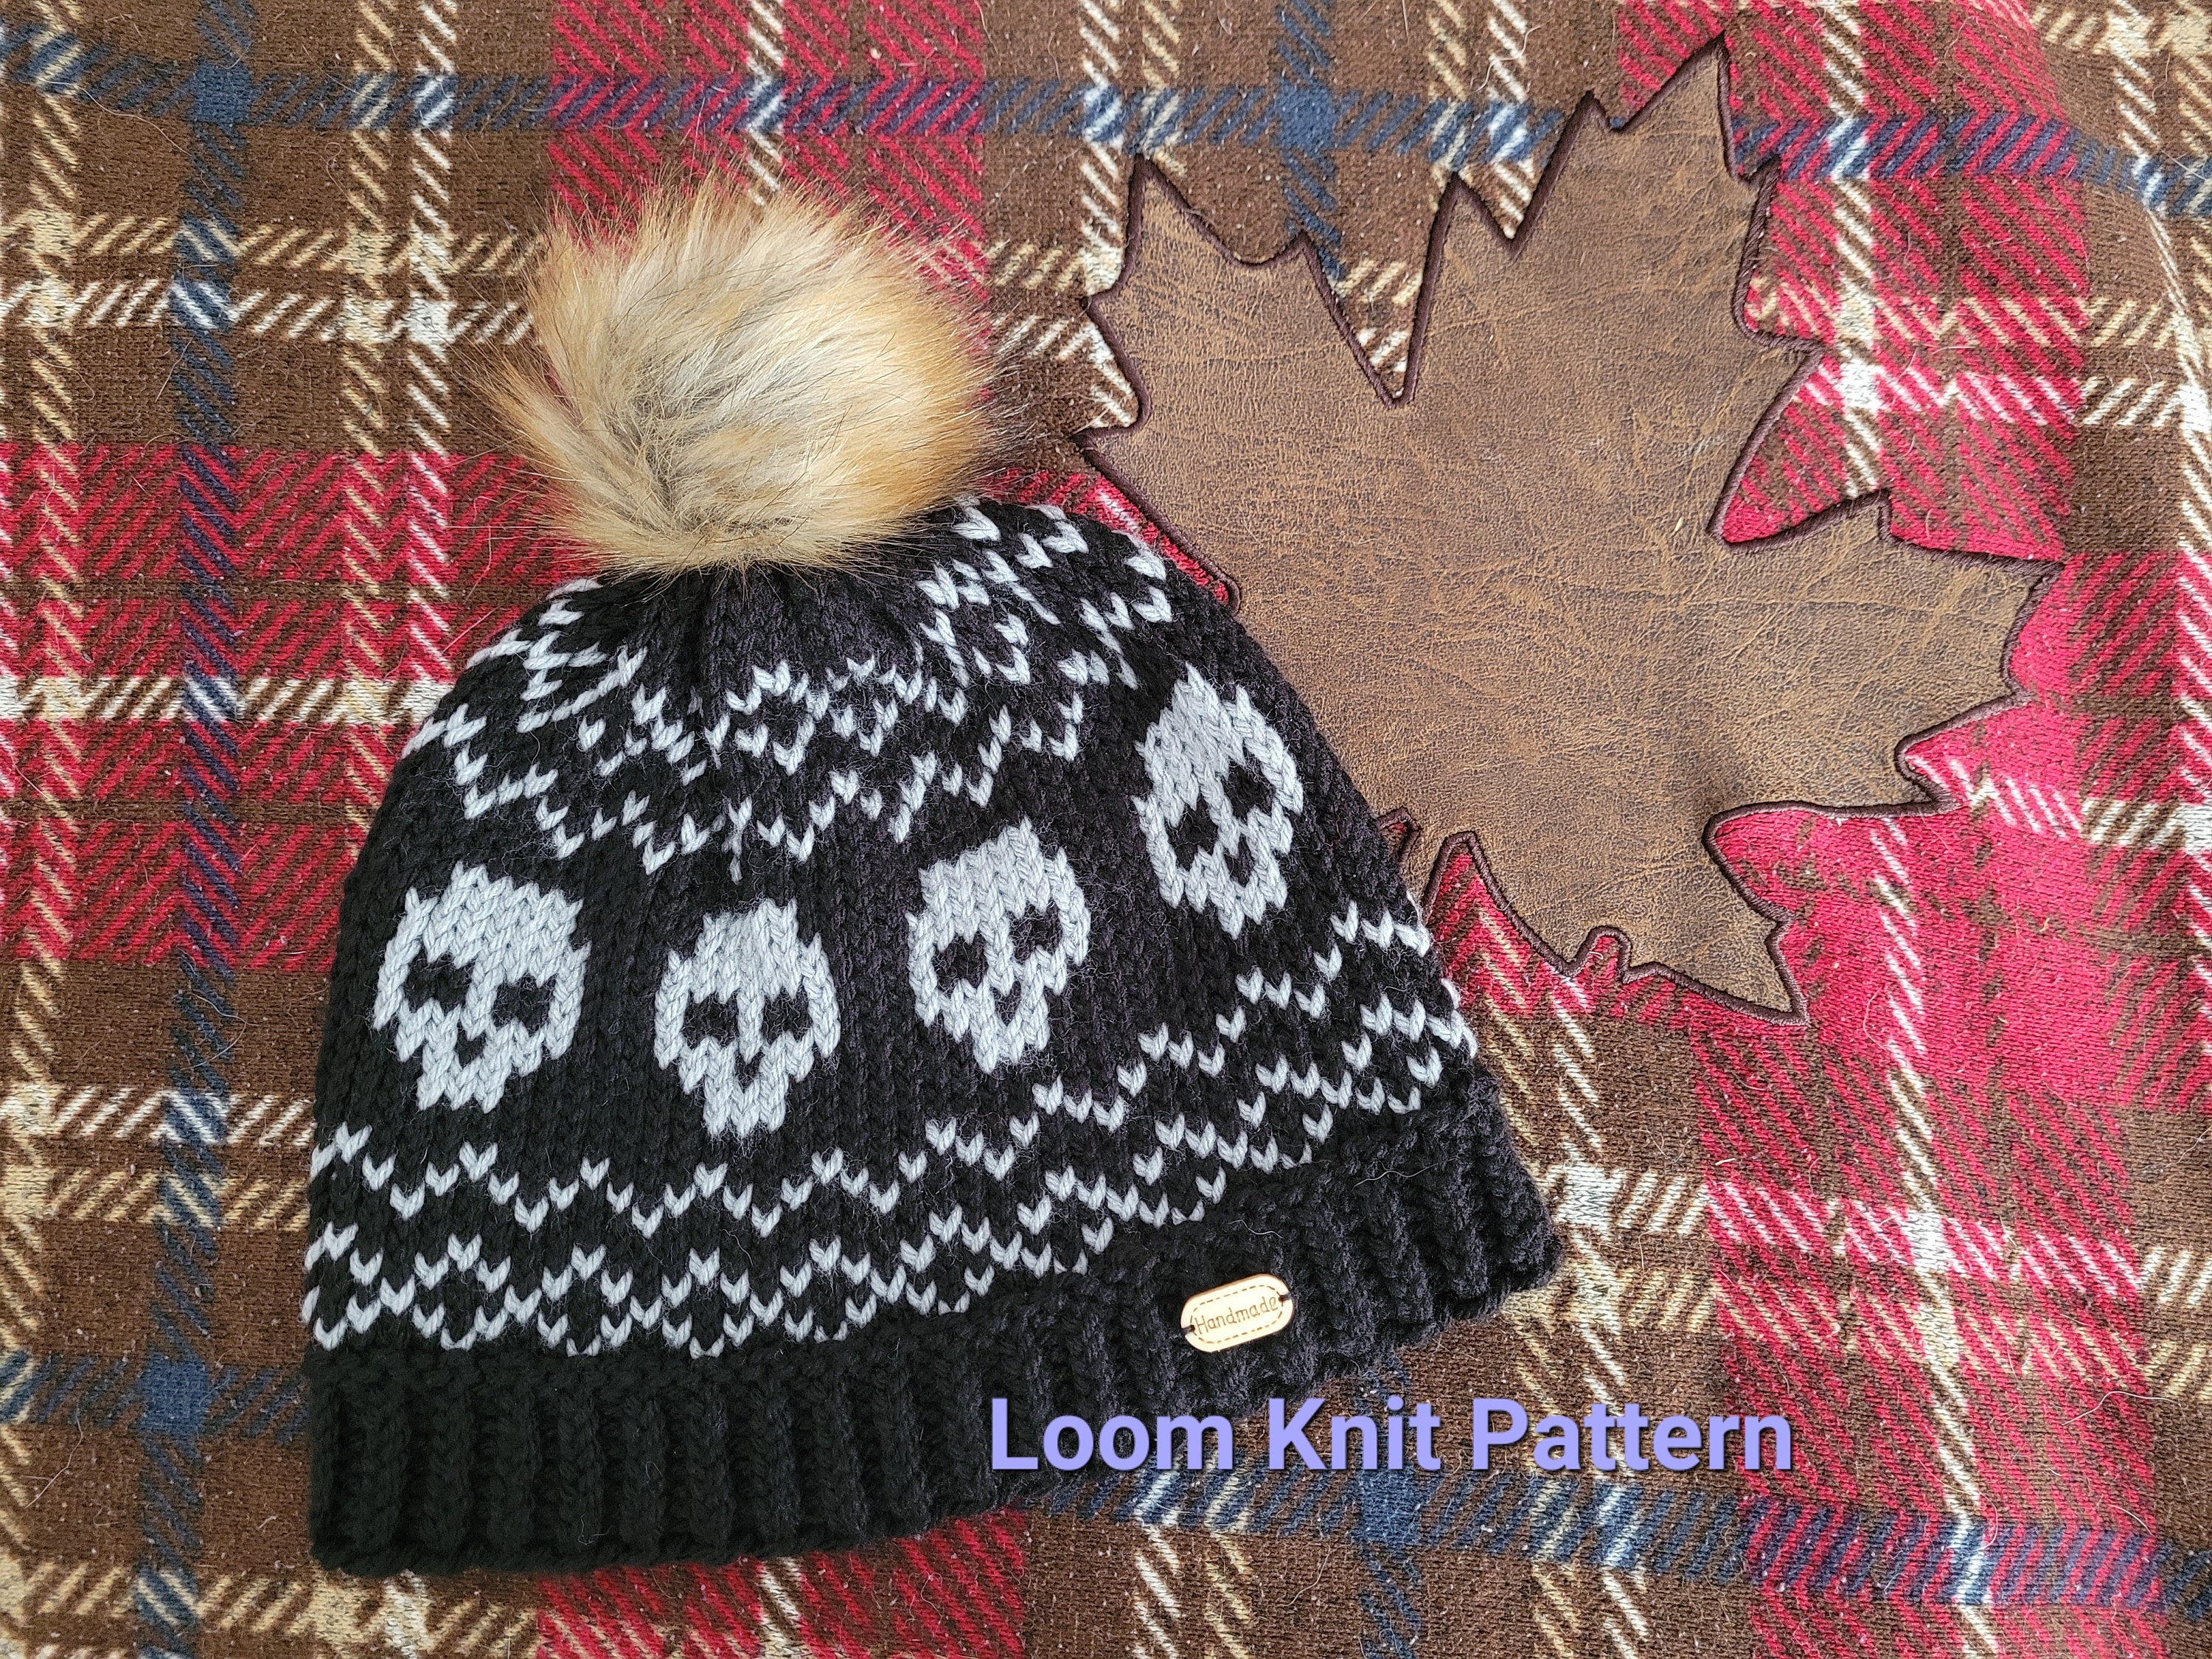 Loom Knit Fair Isle Hat Patterns. 6 PDF Loom Knitting Patterns.